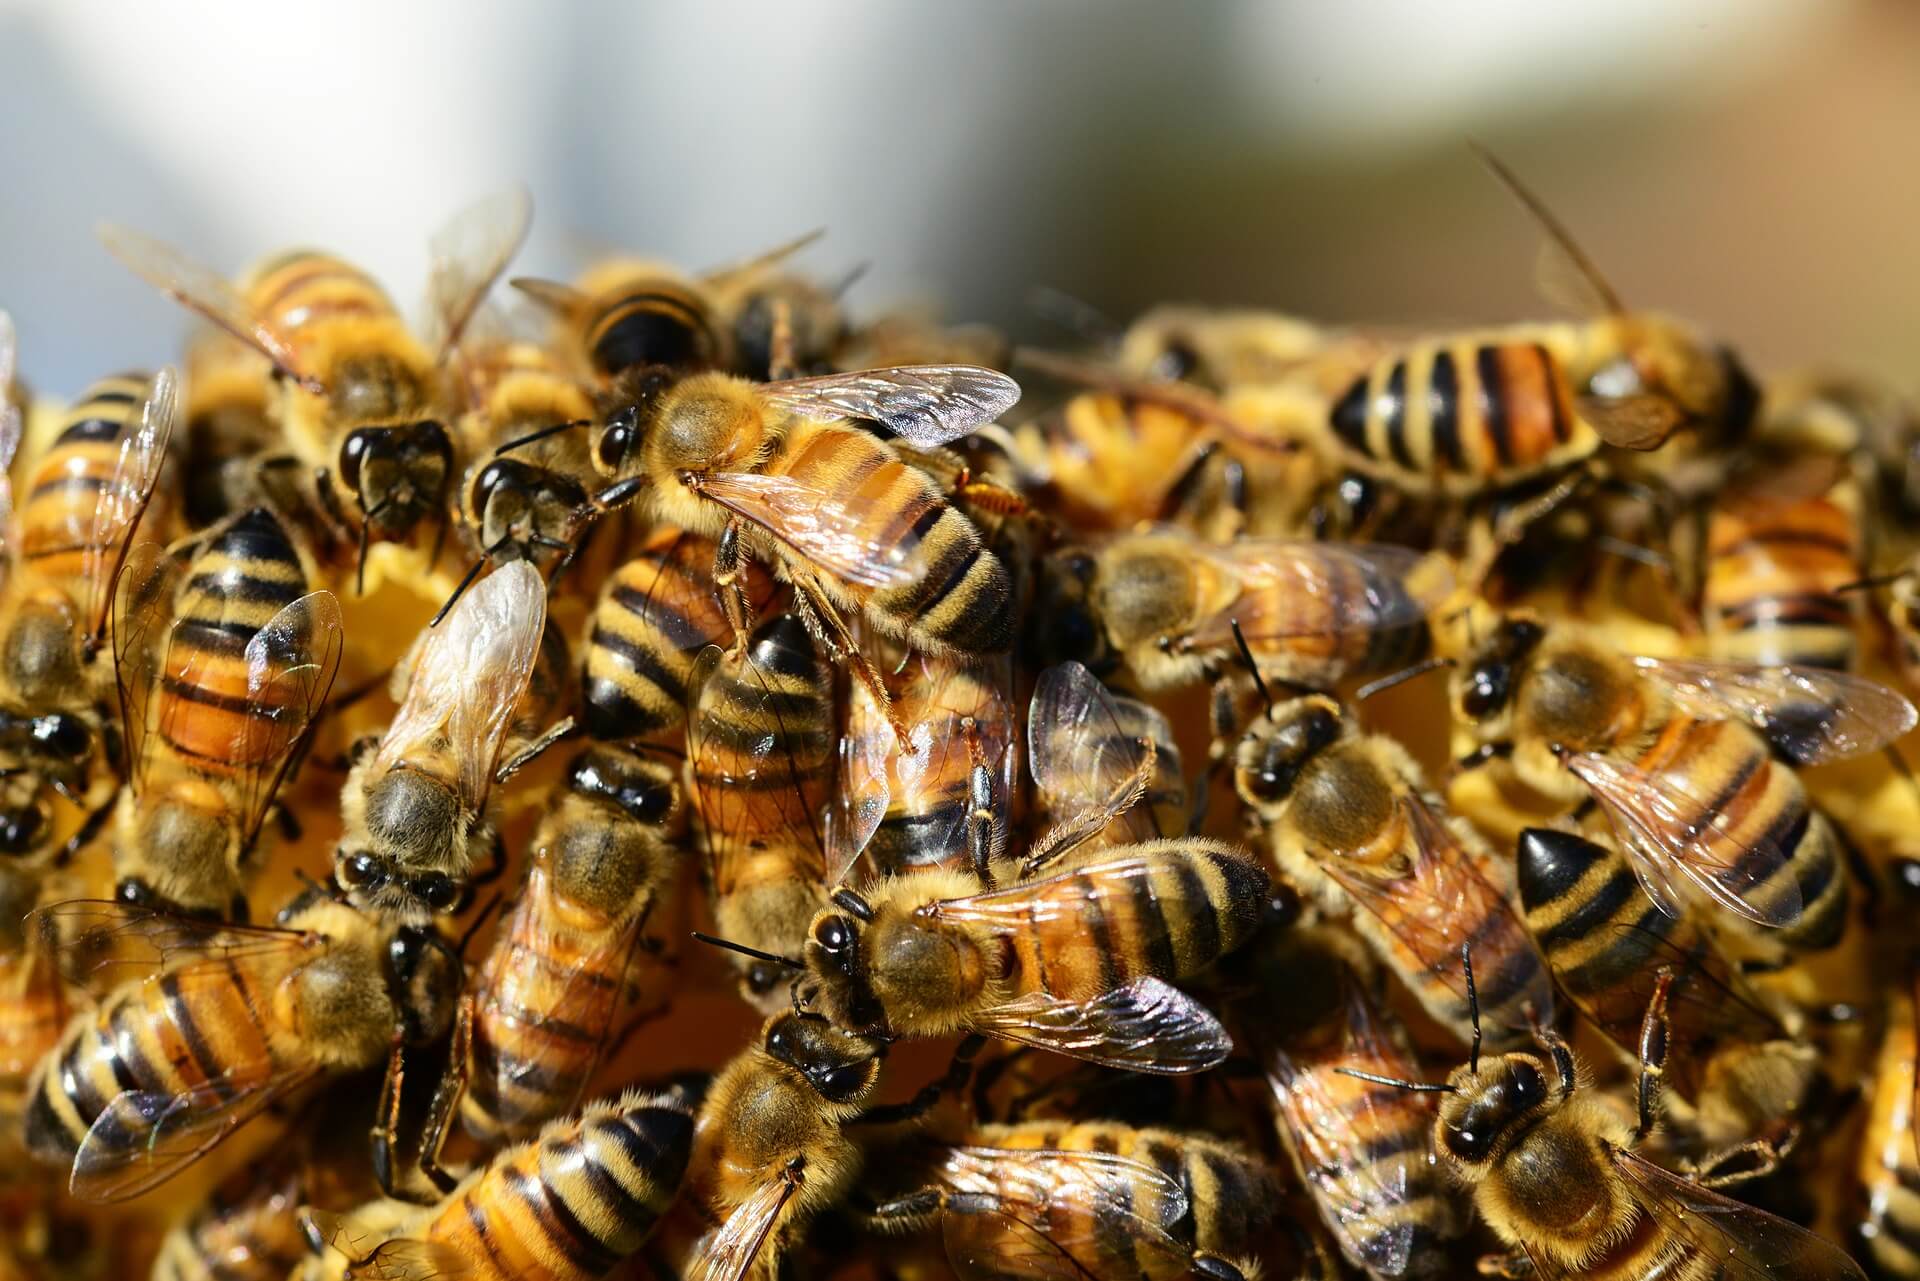 Возбудители нозематоза выявлены лабораторией в пробах подмора пчел